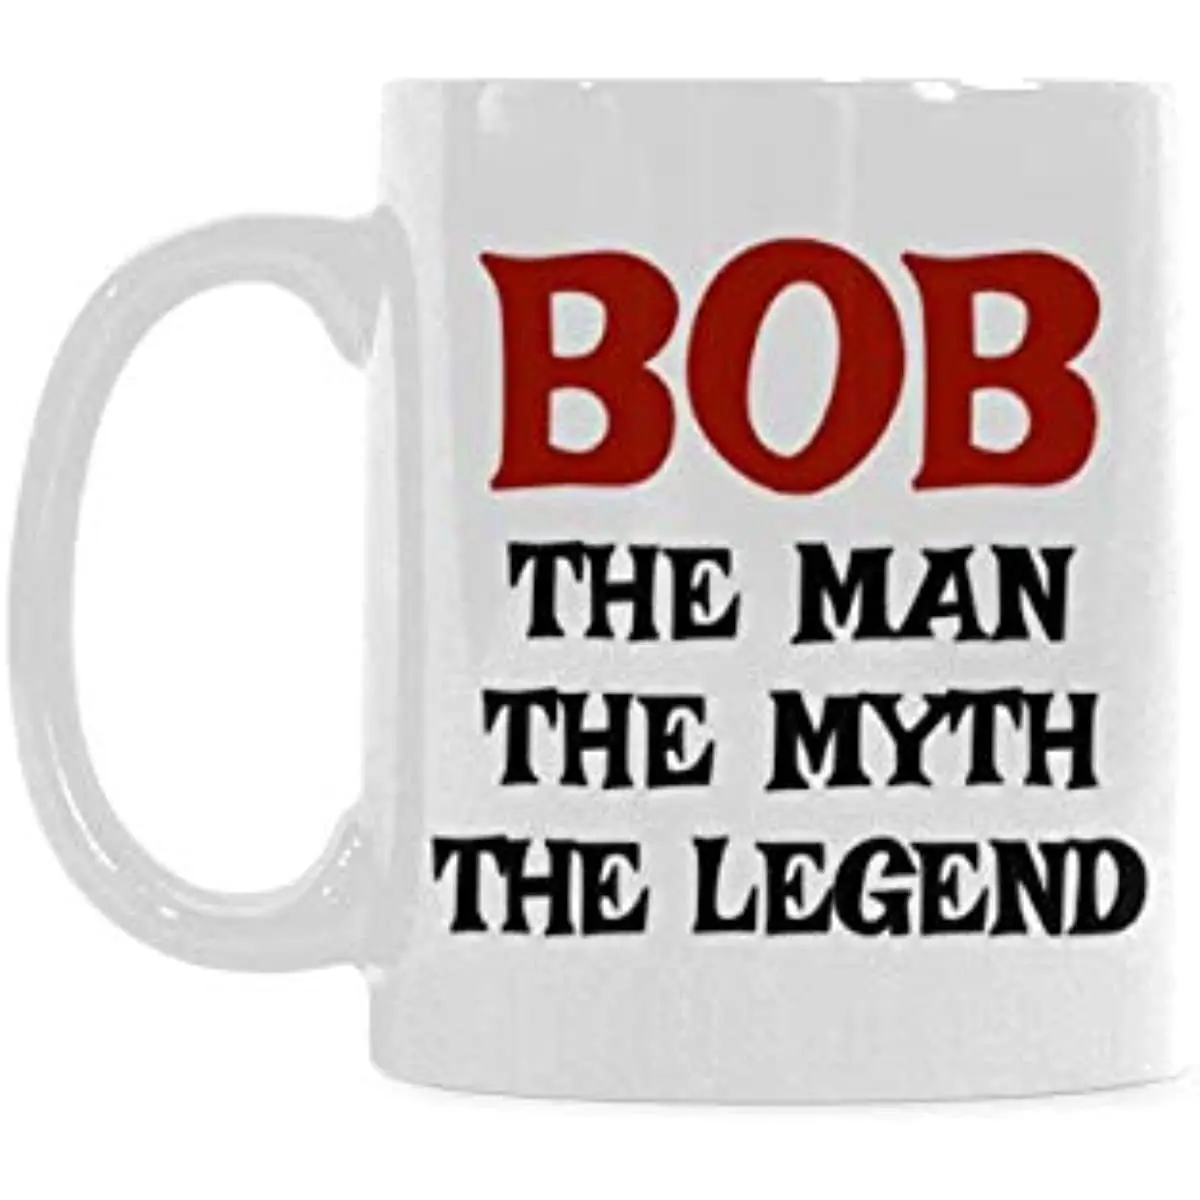 

Забавная кружка для кофе или офисных чашек с изображением Боба, человека, легенды о легенде, для забавного Боба, Подарочная кружка